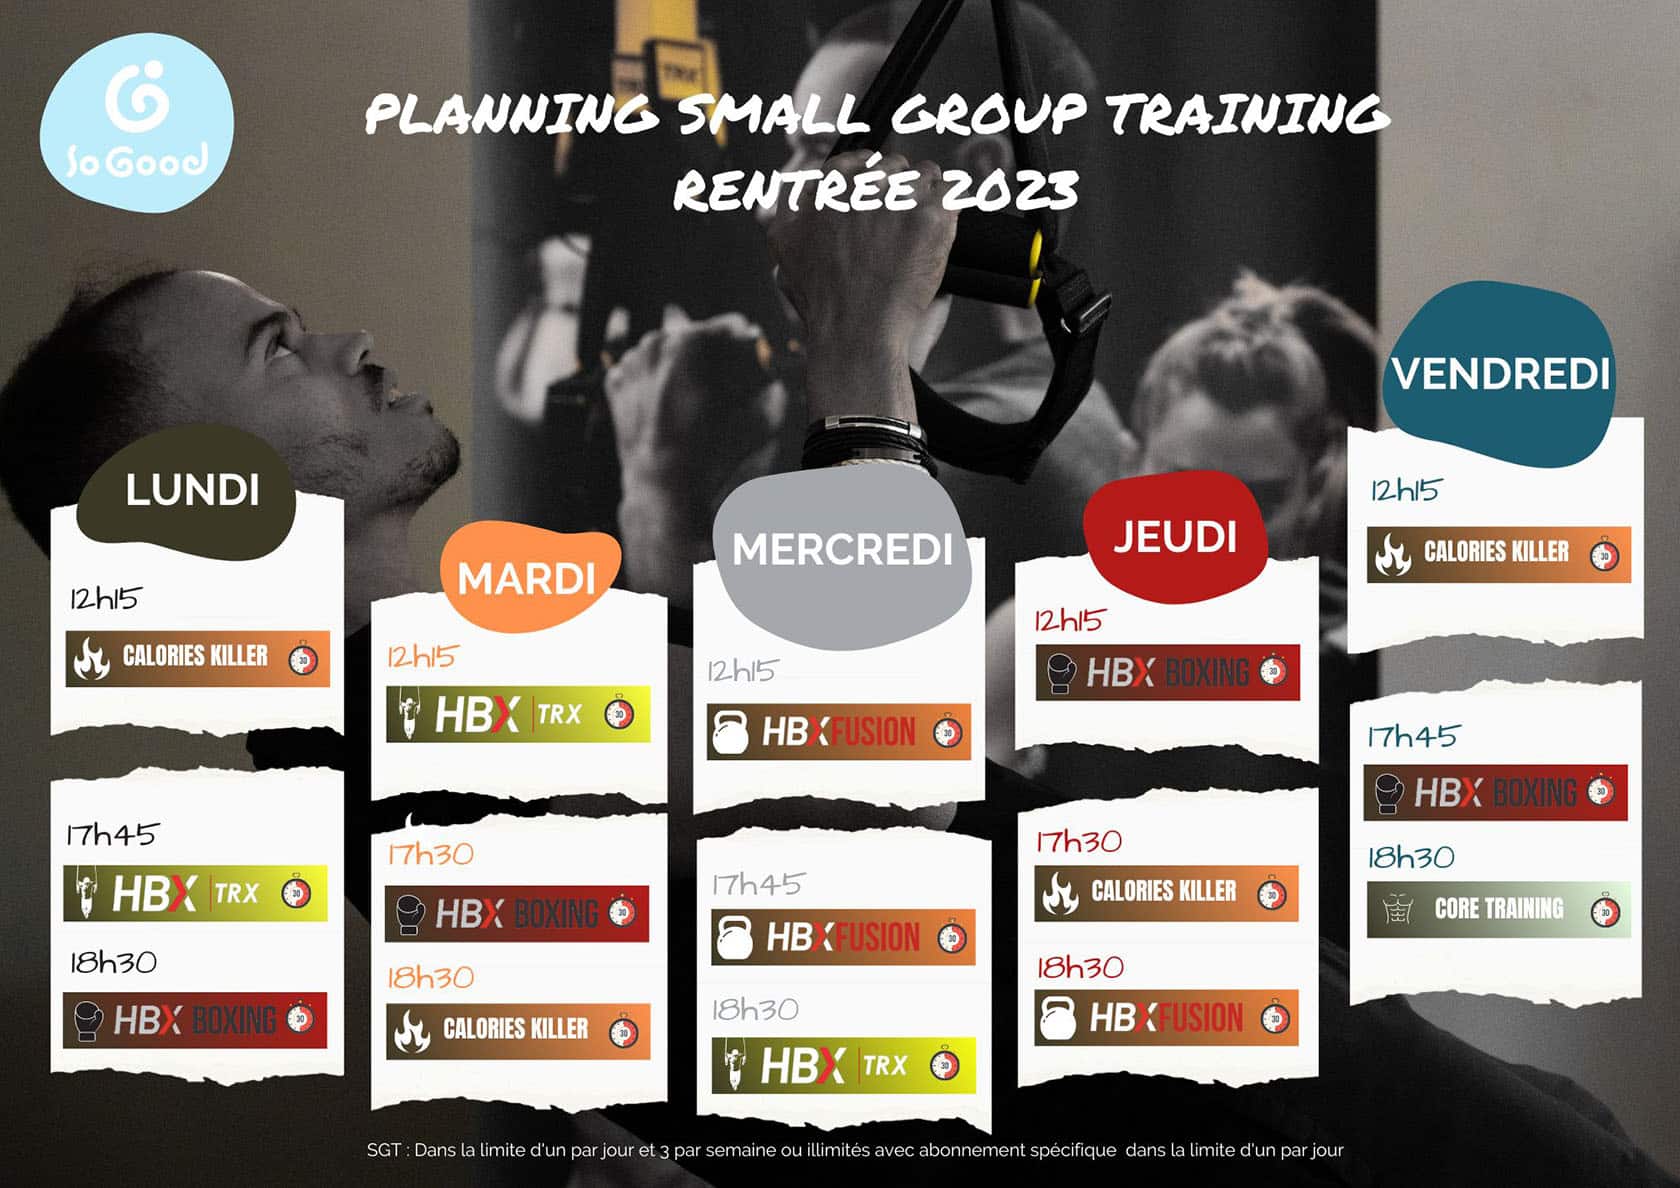 Planning Toulon small group training de la rentrée 2023